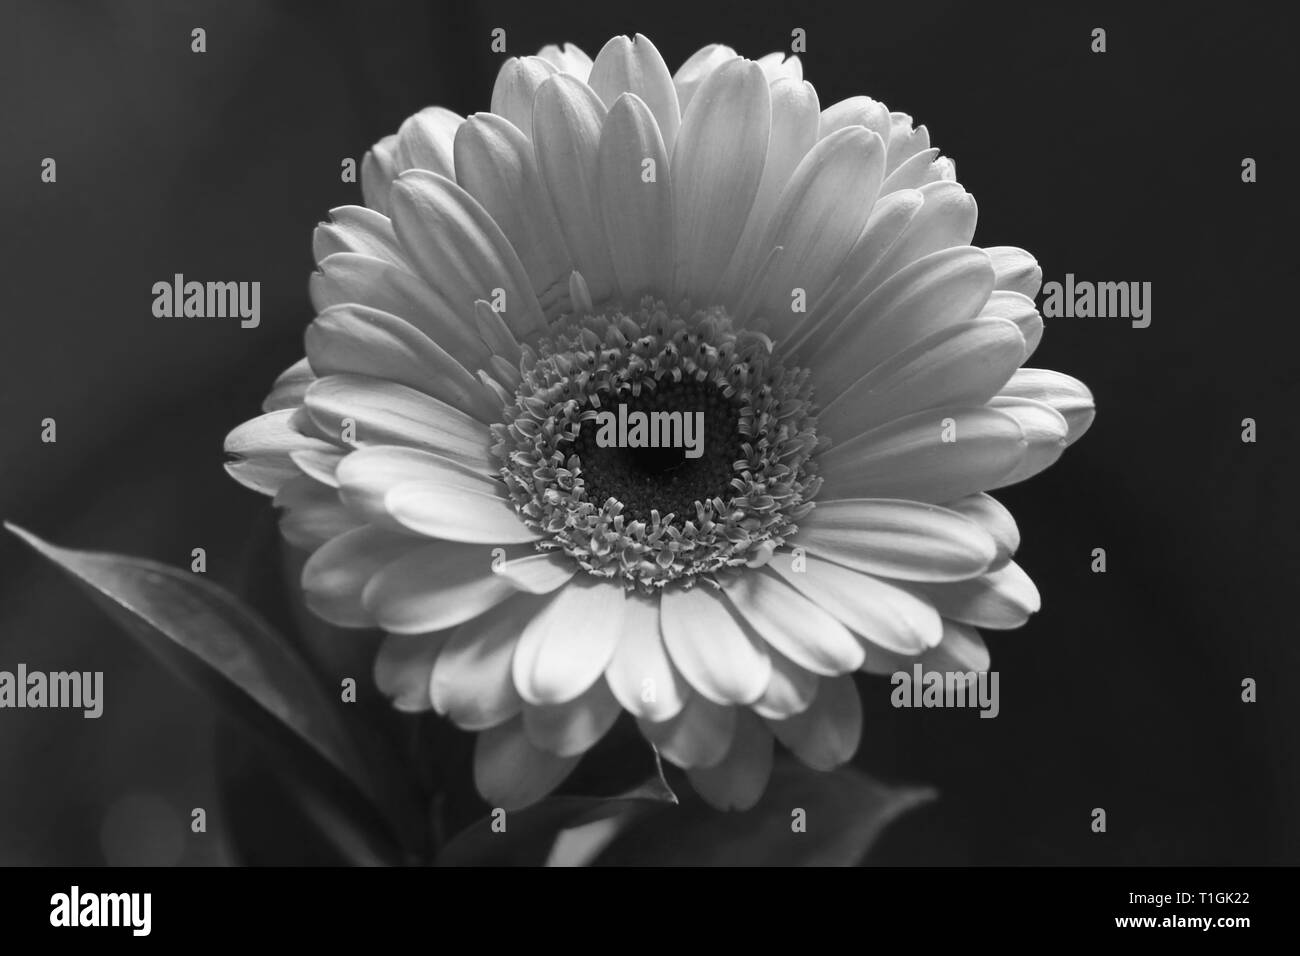 Schöne gerbera Blume in einer Nahaufnahme. Sieht ein bisschen aus wie daisy flower. Auf diesem Foto sehen Sie die blühenden Blume in schwarz-weiß Foto. Stockfoto